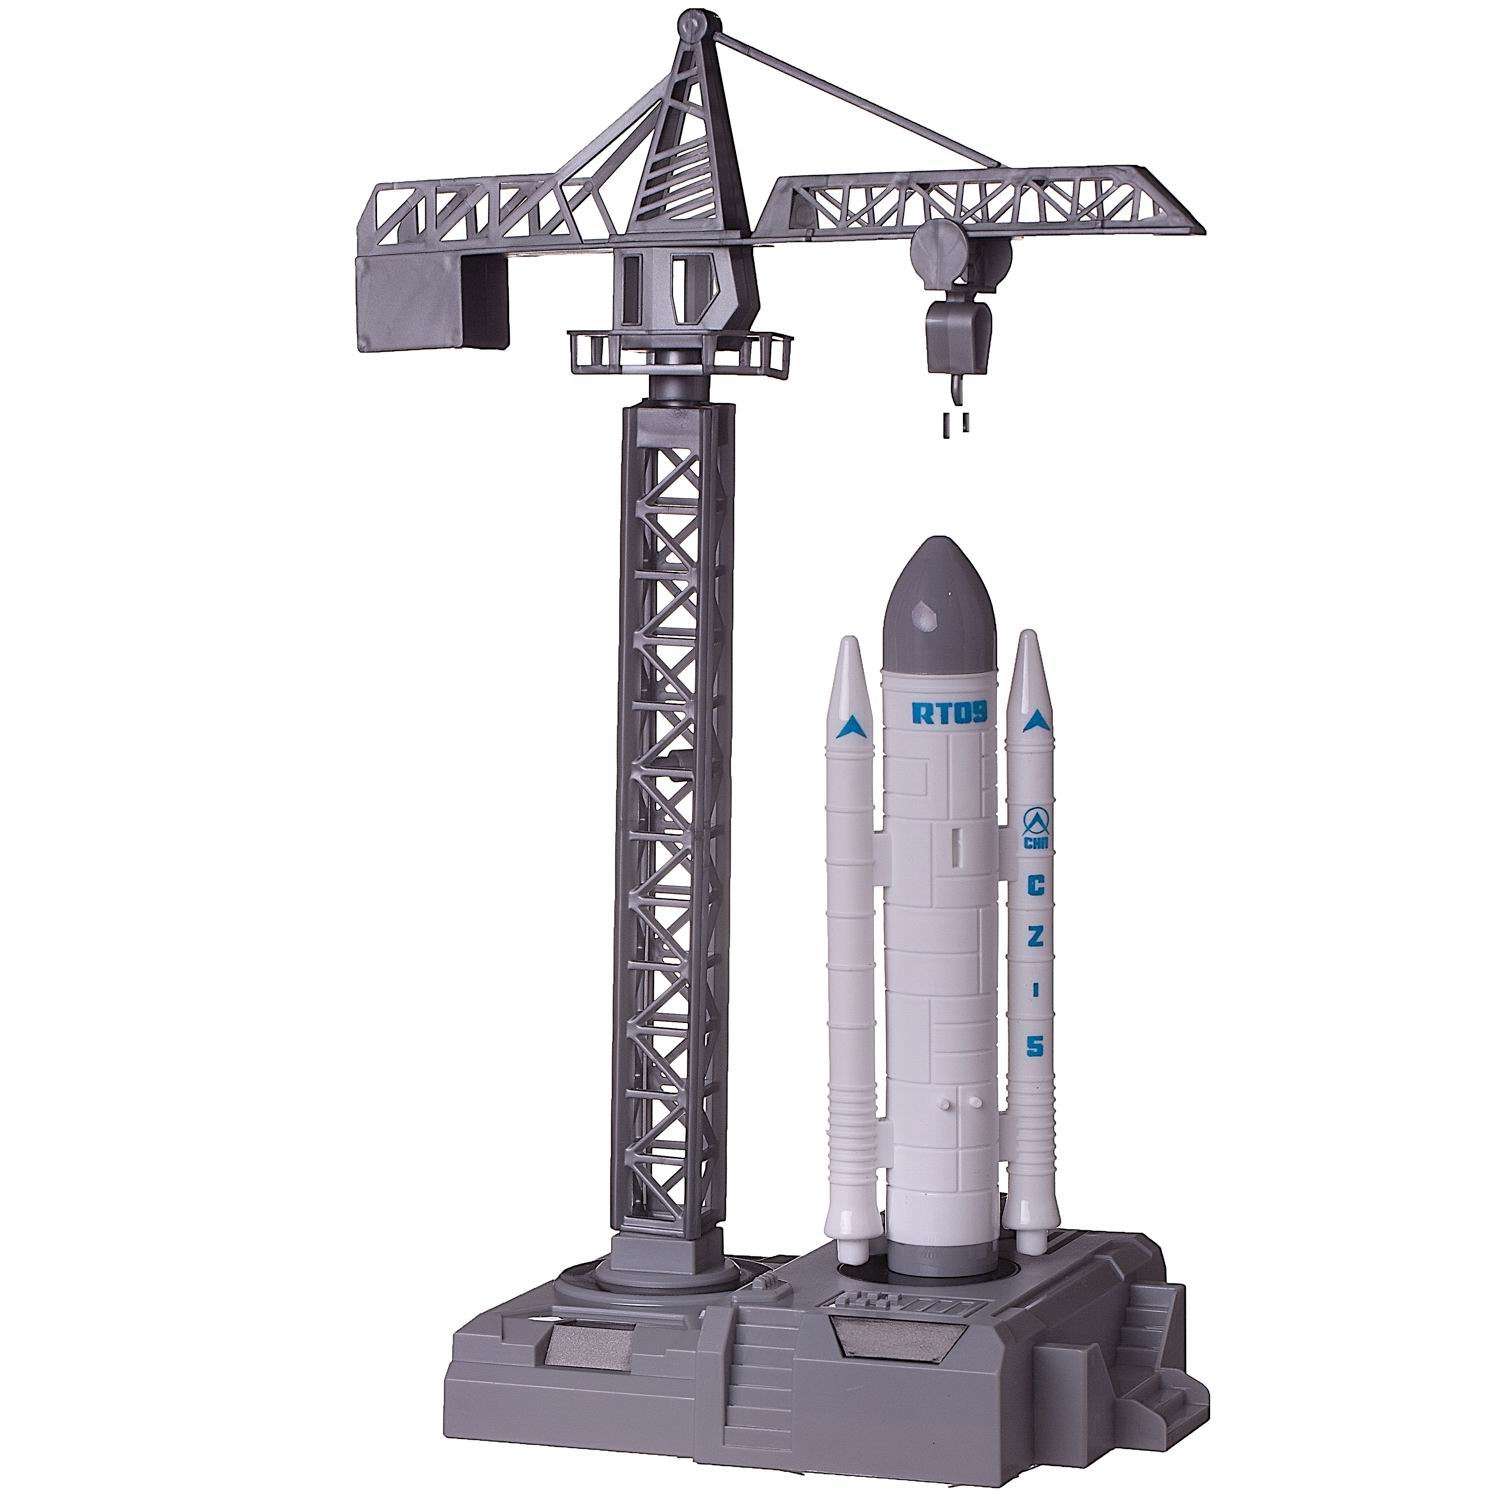 Игровой набор Junfa Покорители космоса стартовая площадка шаттл и мини-ракета и 3 космонавта WE-13923 - фото 5